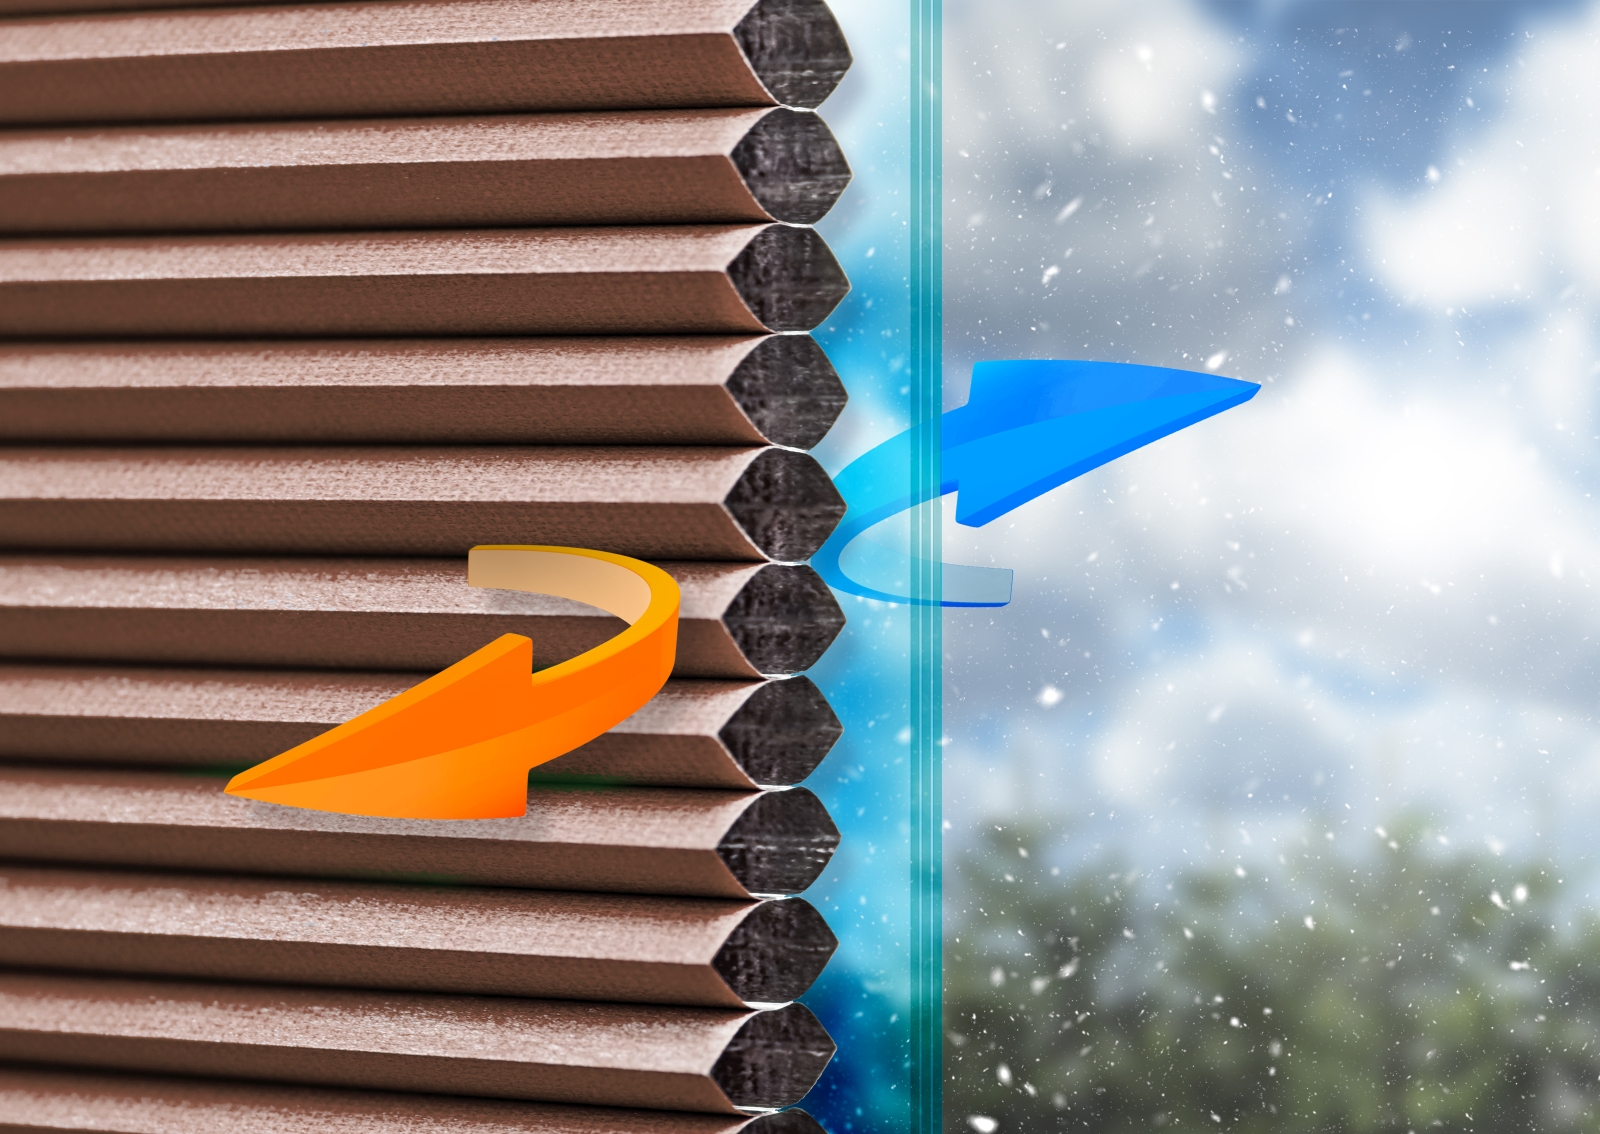 Plisy termoizolacyjne dzięki strukturze kanalików ograniczają ubytki ciepła przez okna.